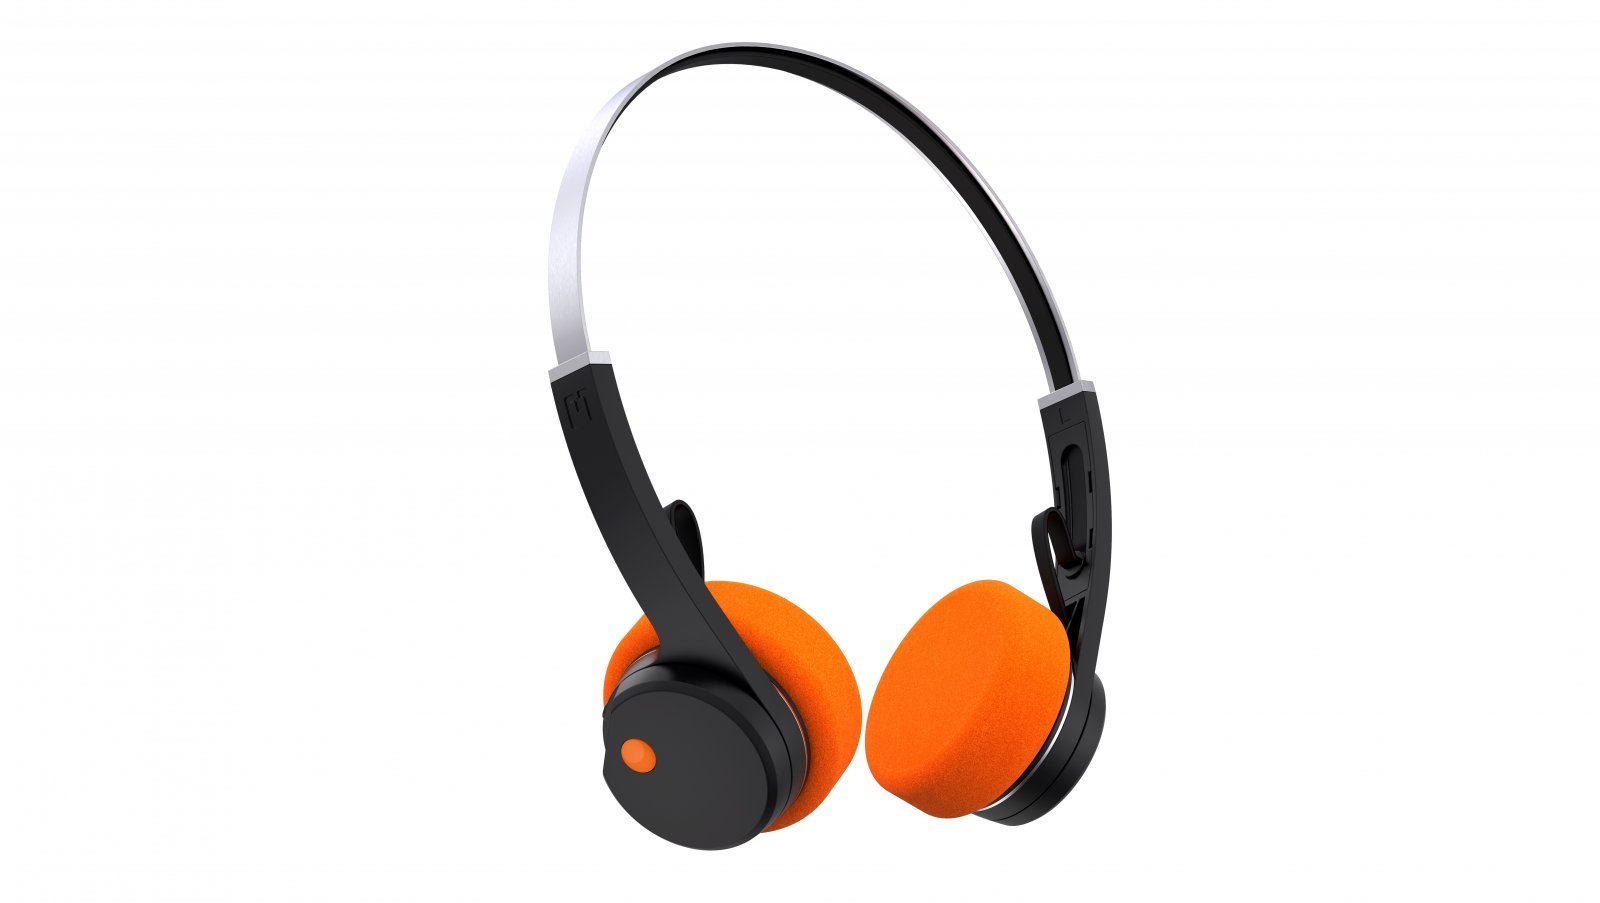 mondo-freestyle-headphones-hero-black-orange.jpg